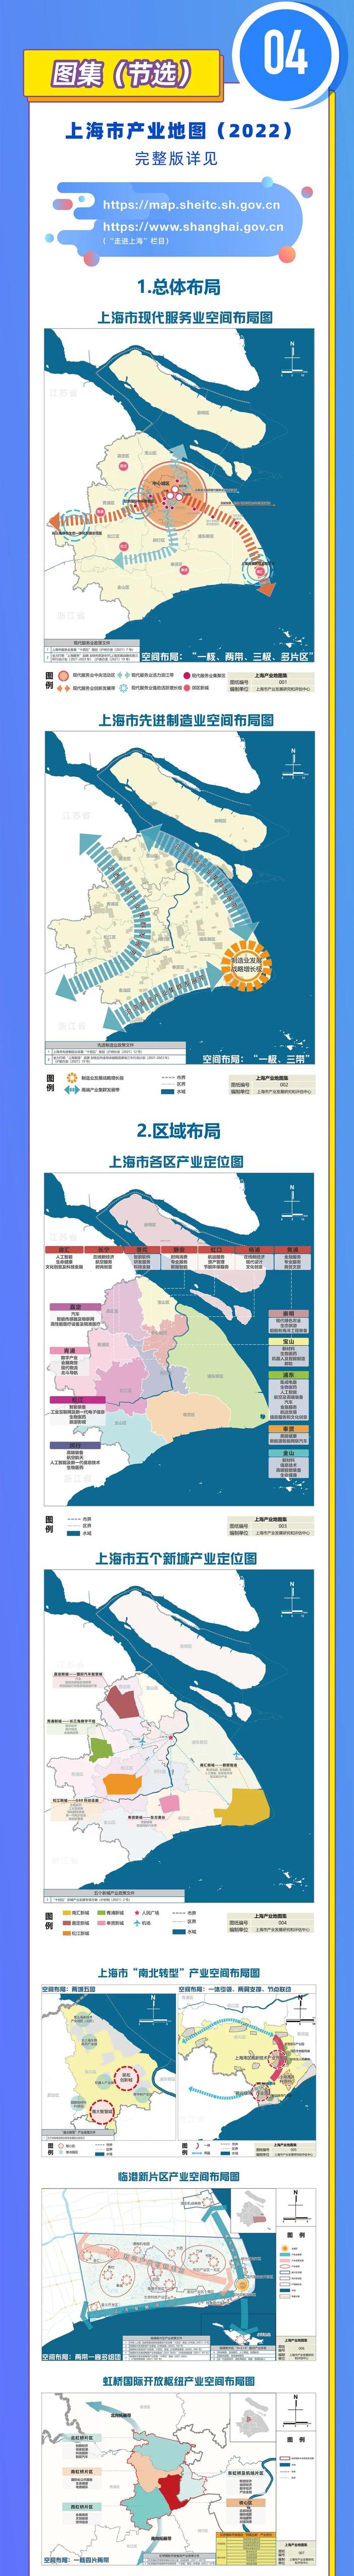 一图读懂上海市产业地图